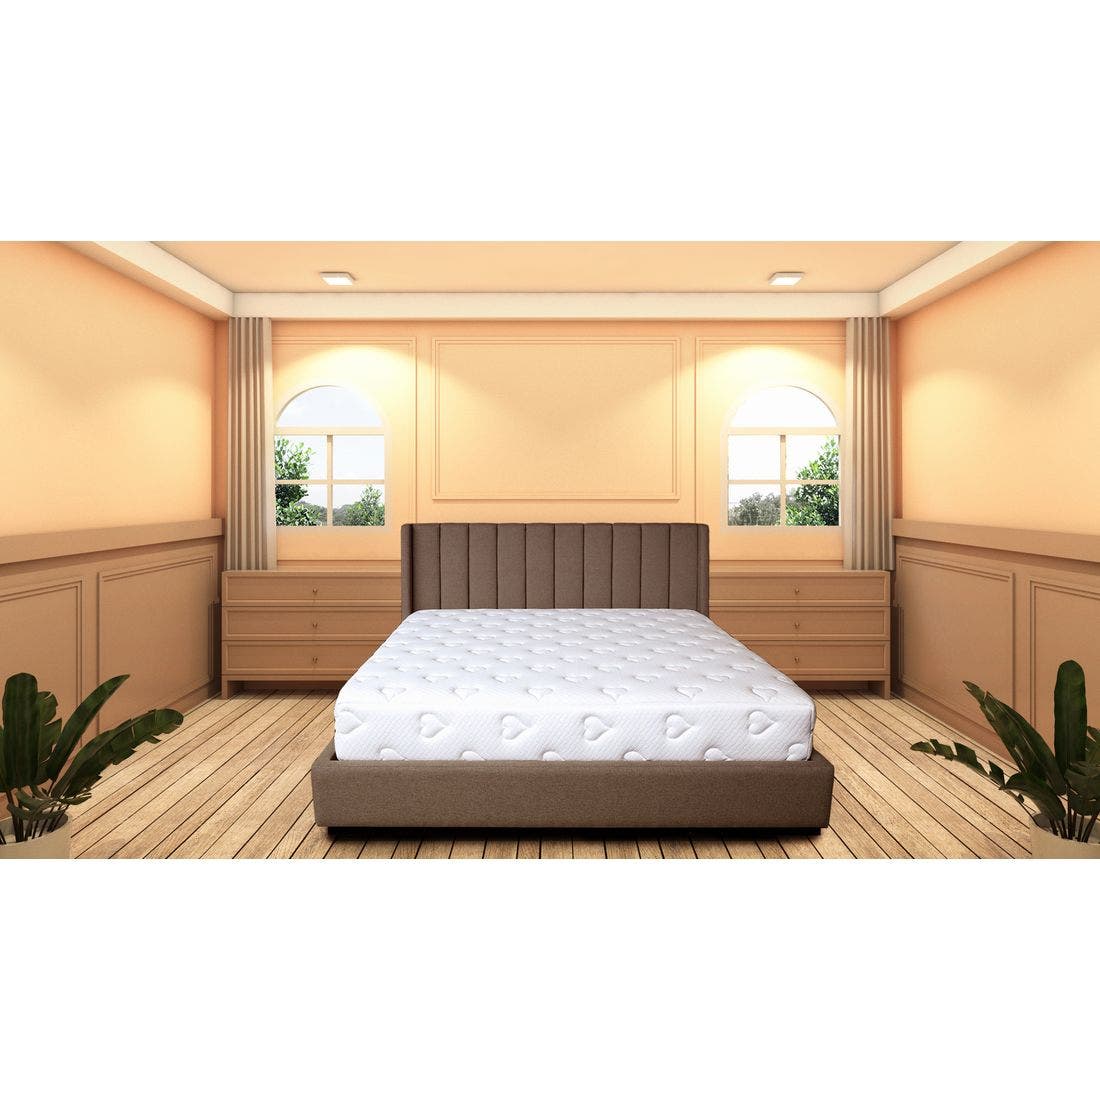 39015053-mattress-bedding-mattresses-pocket-spring-mattress-31